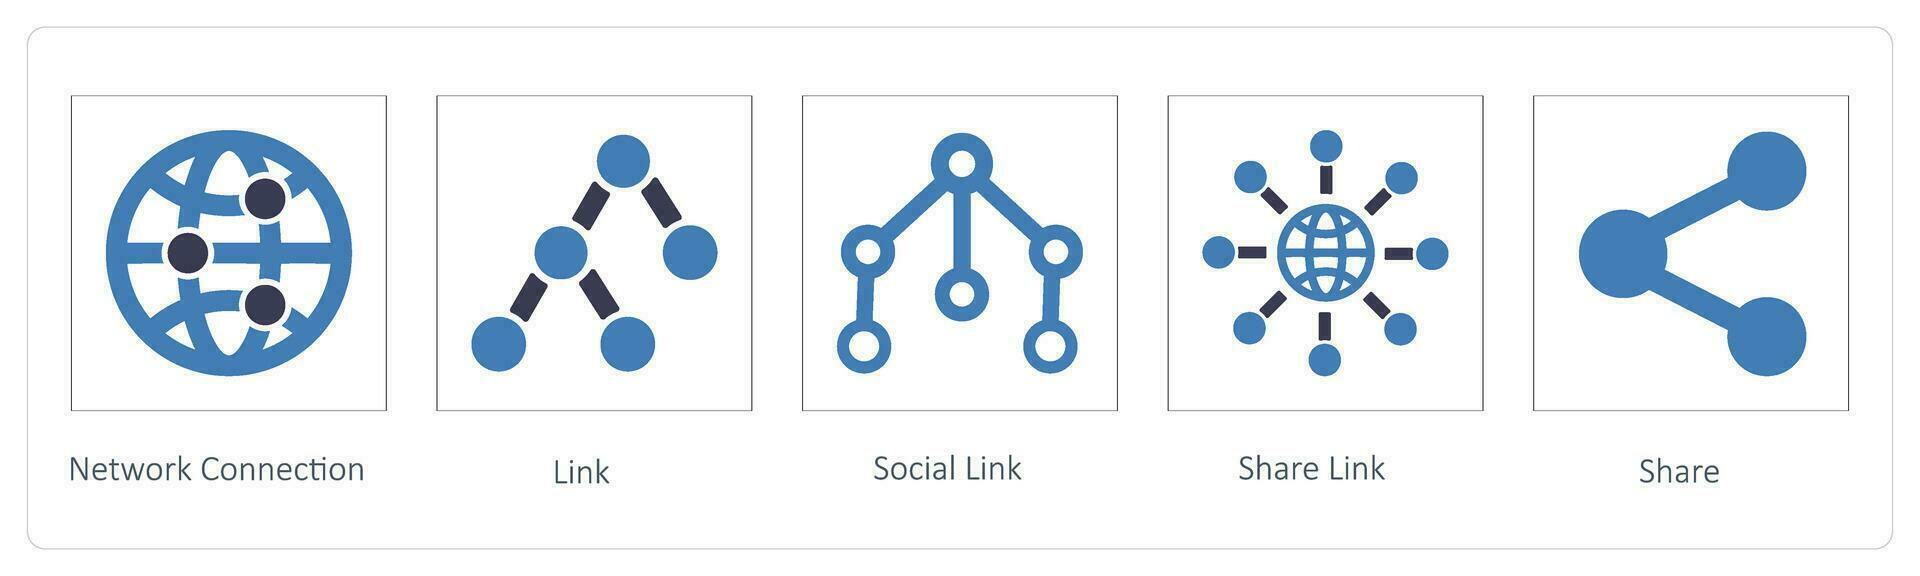 réseau connexion, lien et social lien vecteur